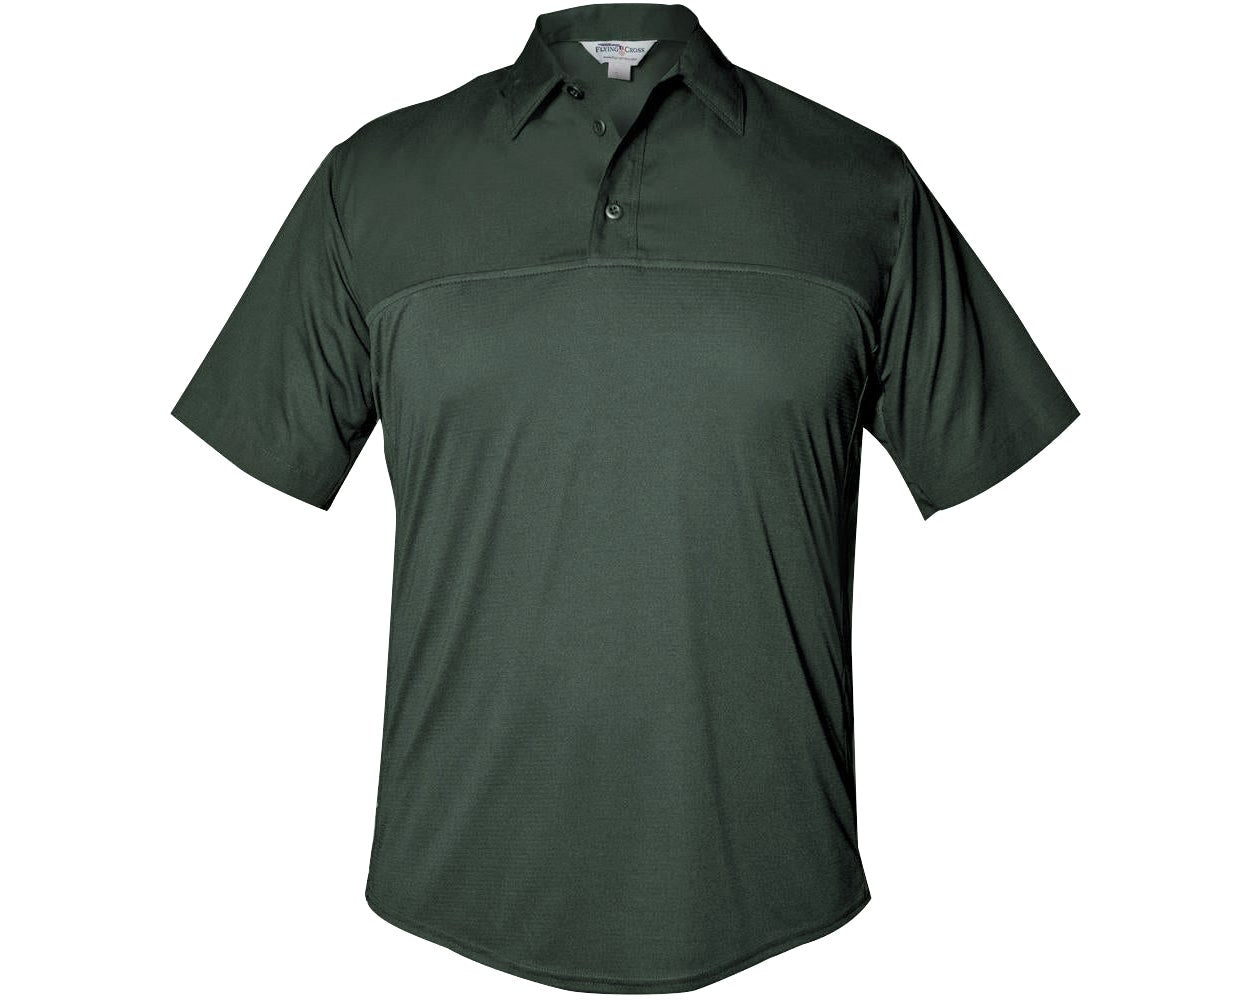 Flying Cross FX STAT Men's Short Sleeve Hybrid Uniform Shirt FX7000VS - OD Green, S